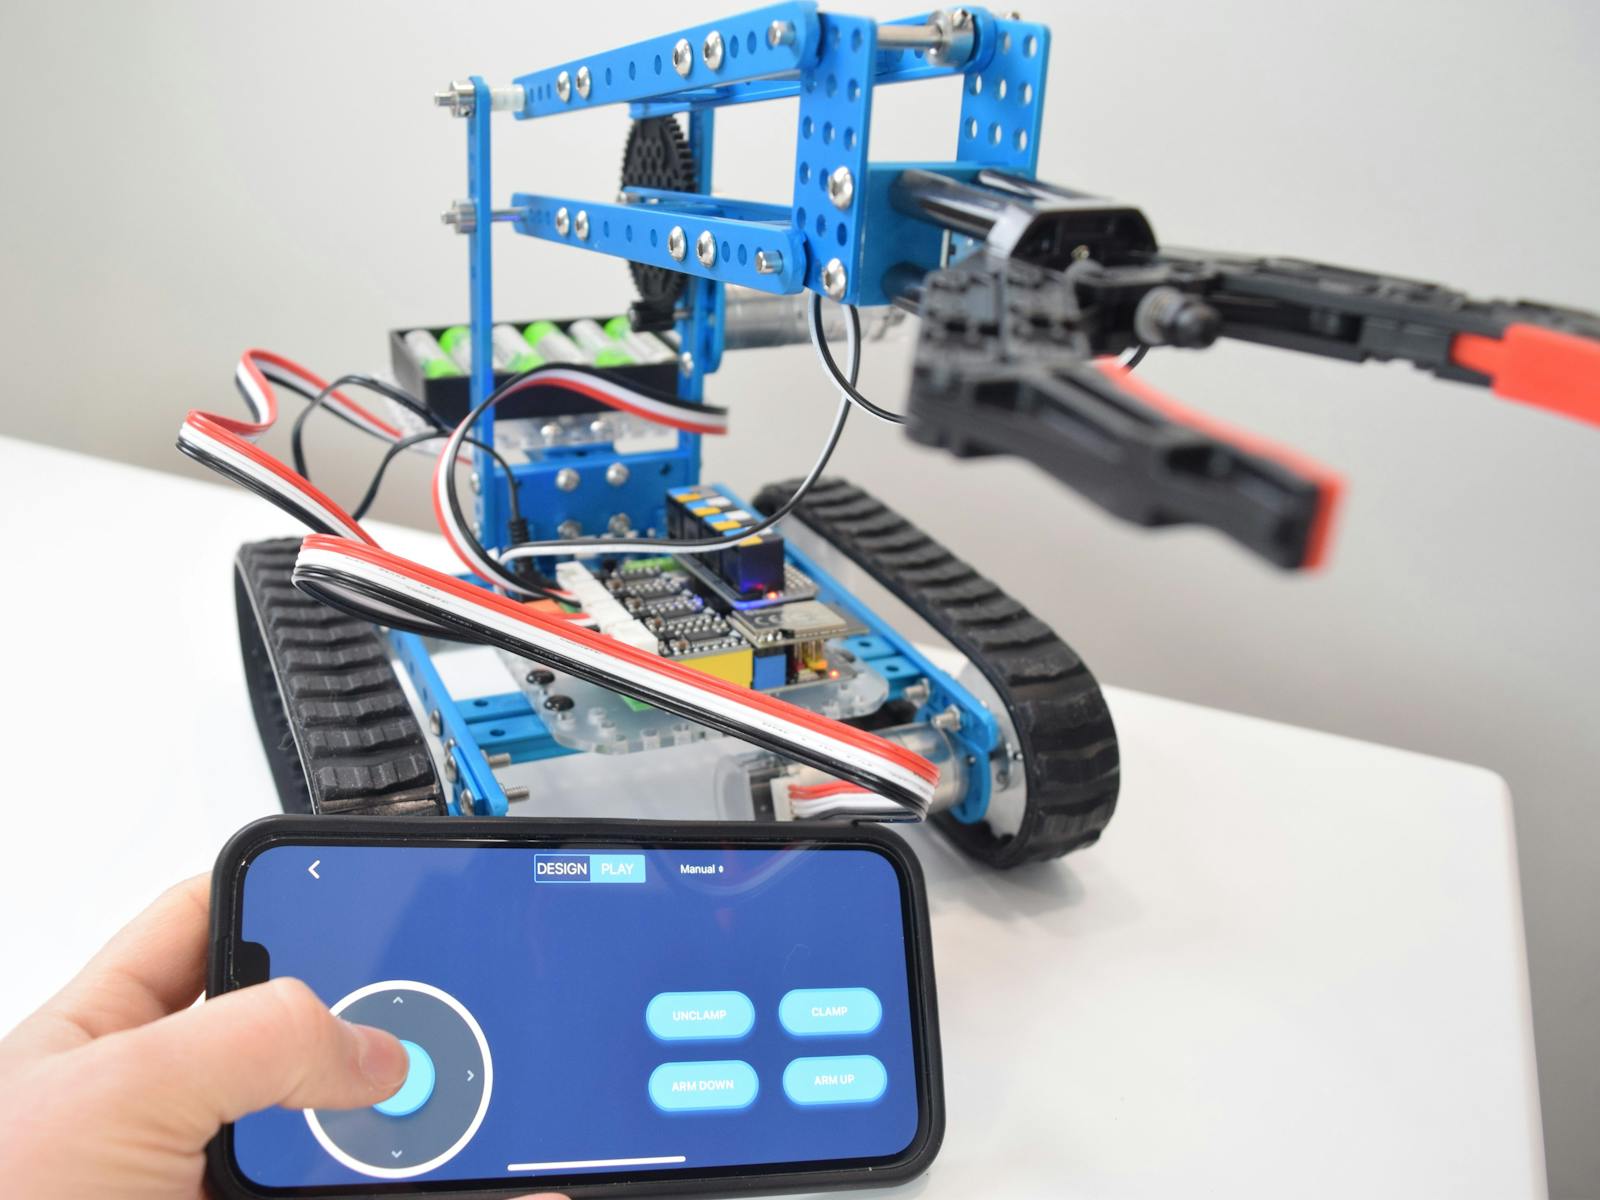 Makeblock mBot Educational Robot Kit - Drag And Drop Coding Robot